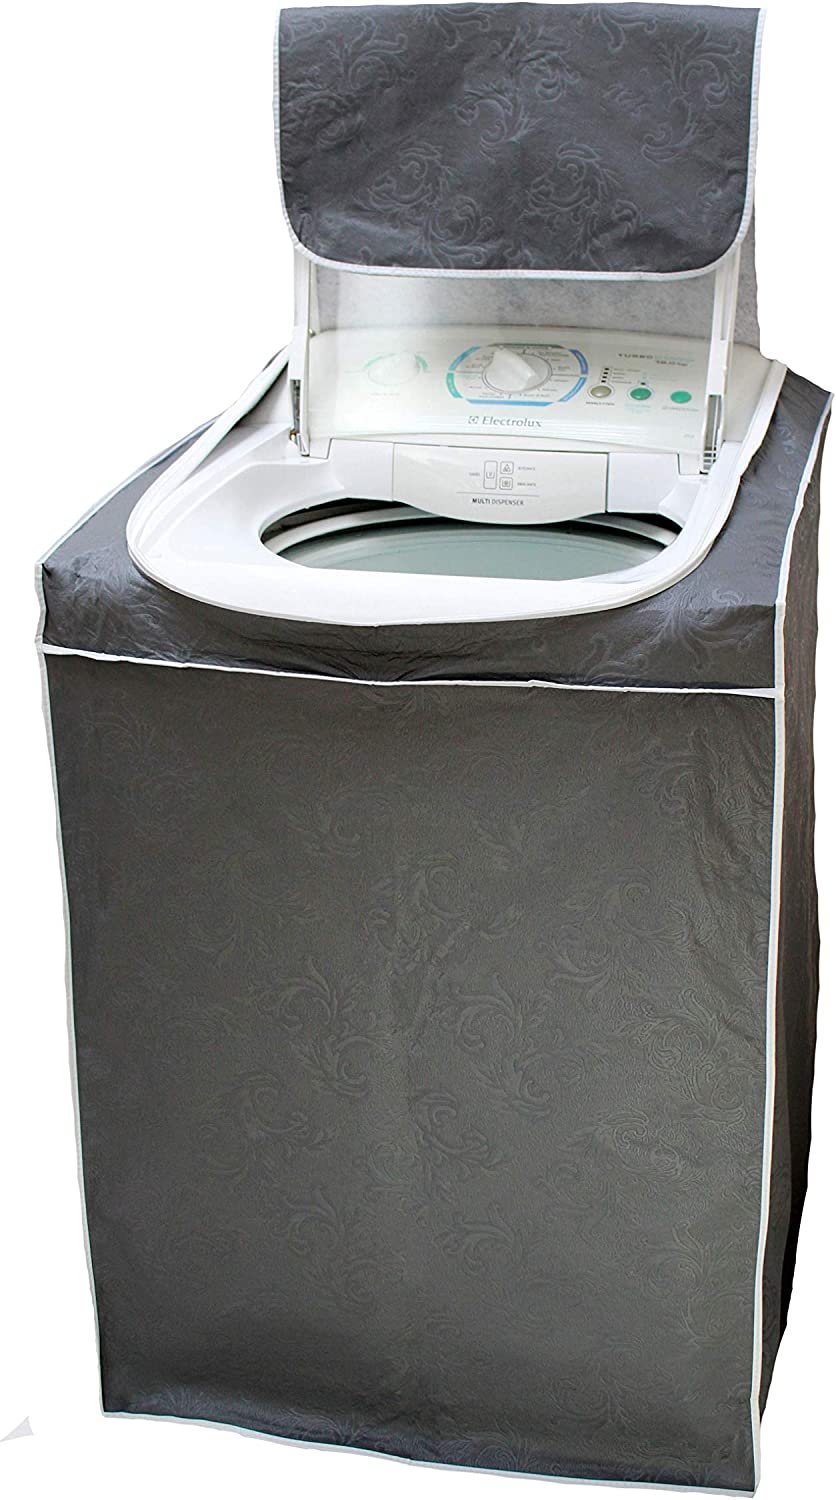 Capa para Máquina de Lavar Com Zíper - CINZA - Tam. M - Todas 5kg a 14kg - Electrolux Brastemp Consu - 1